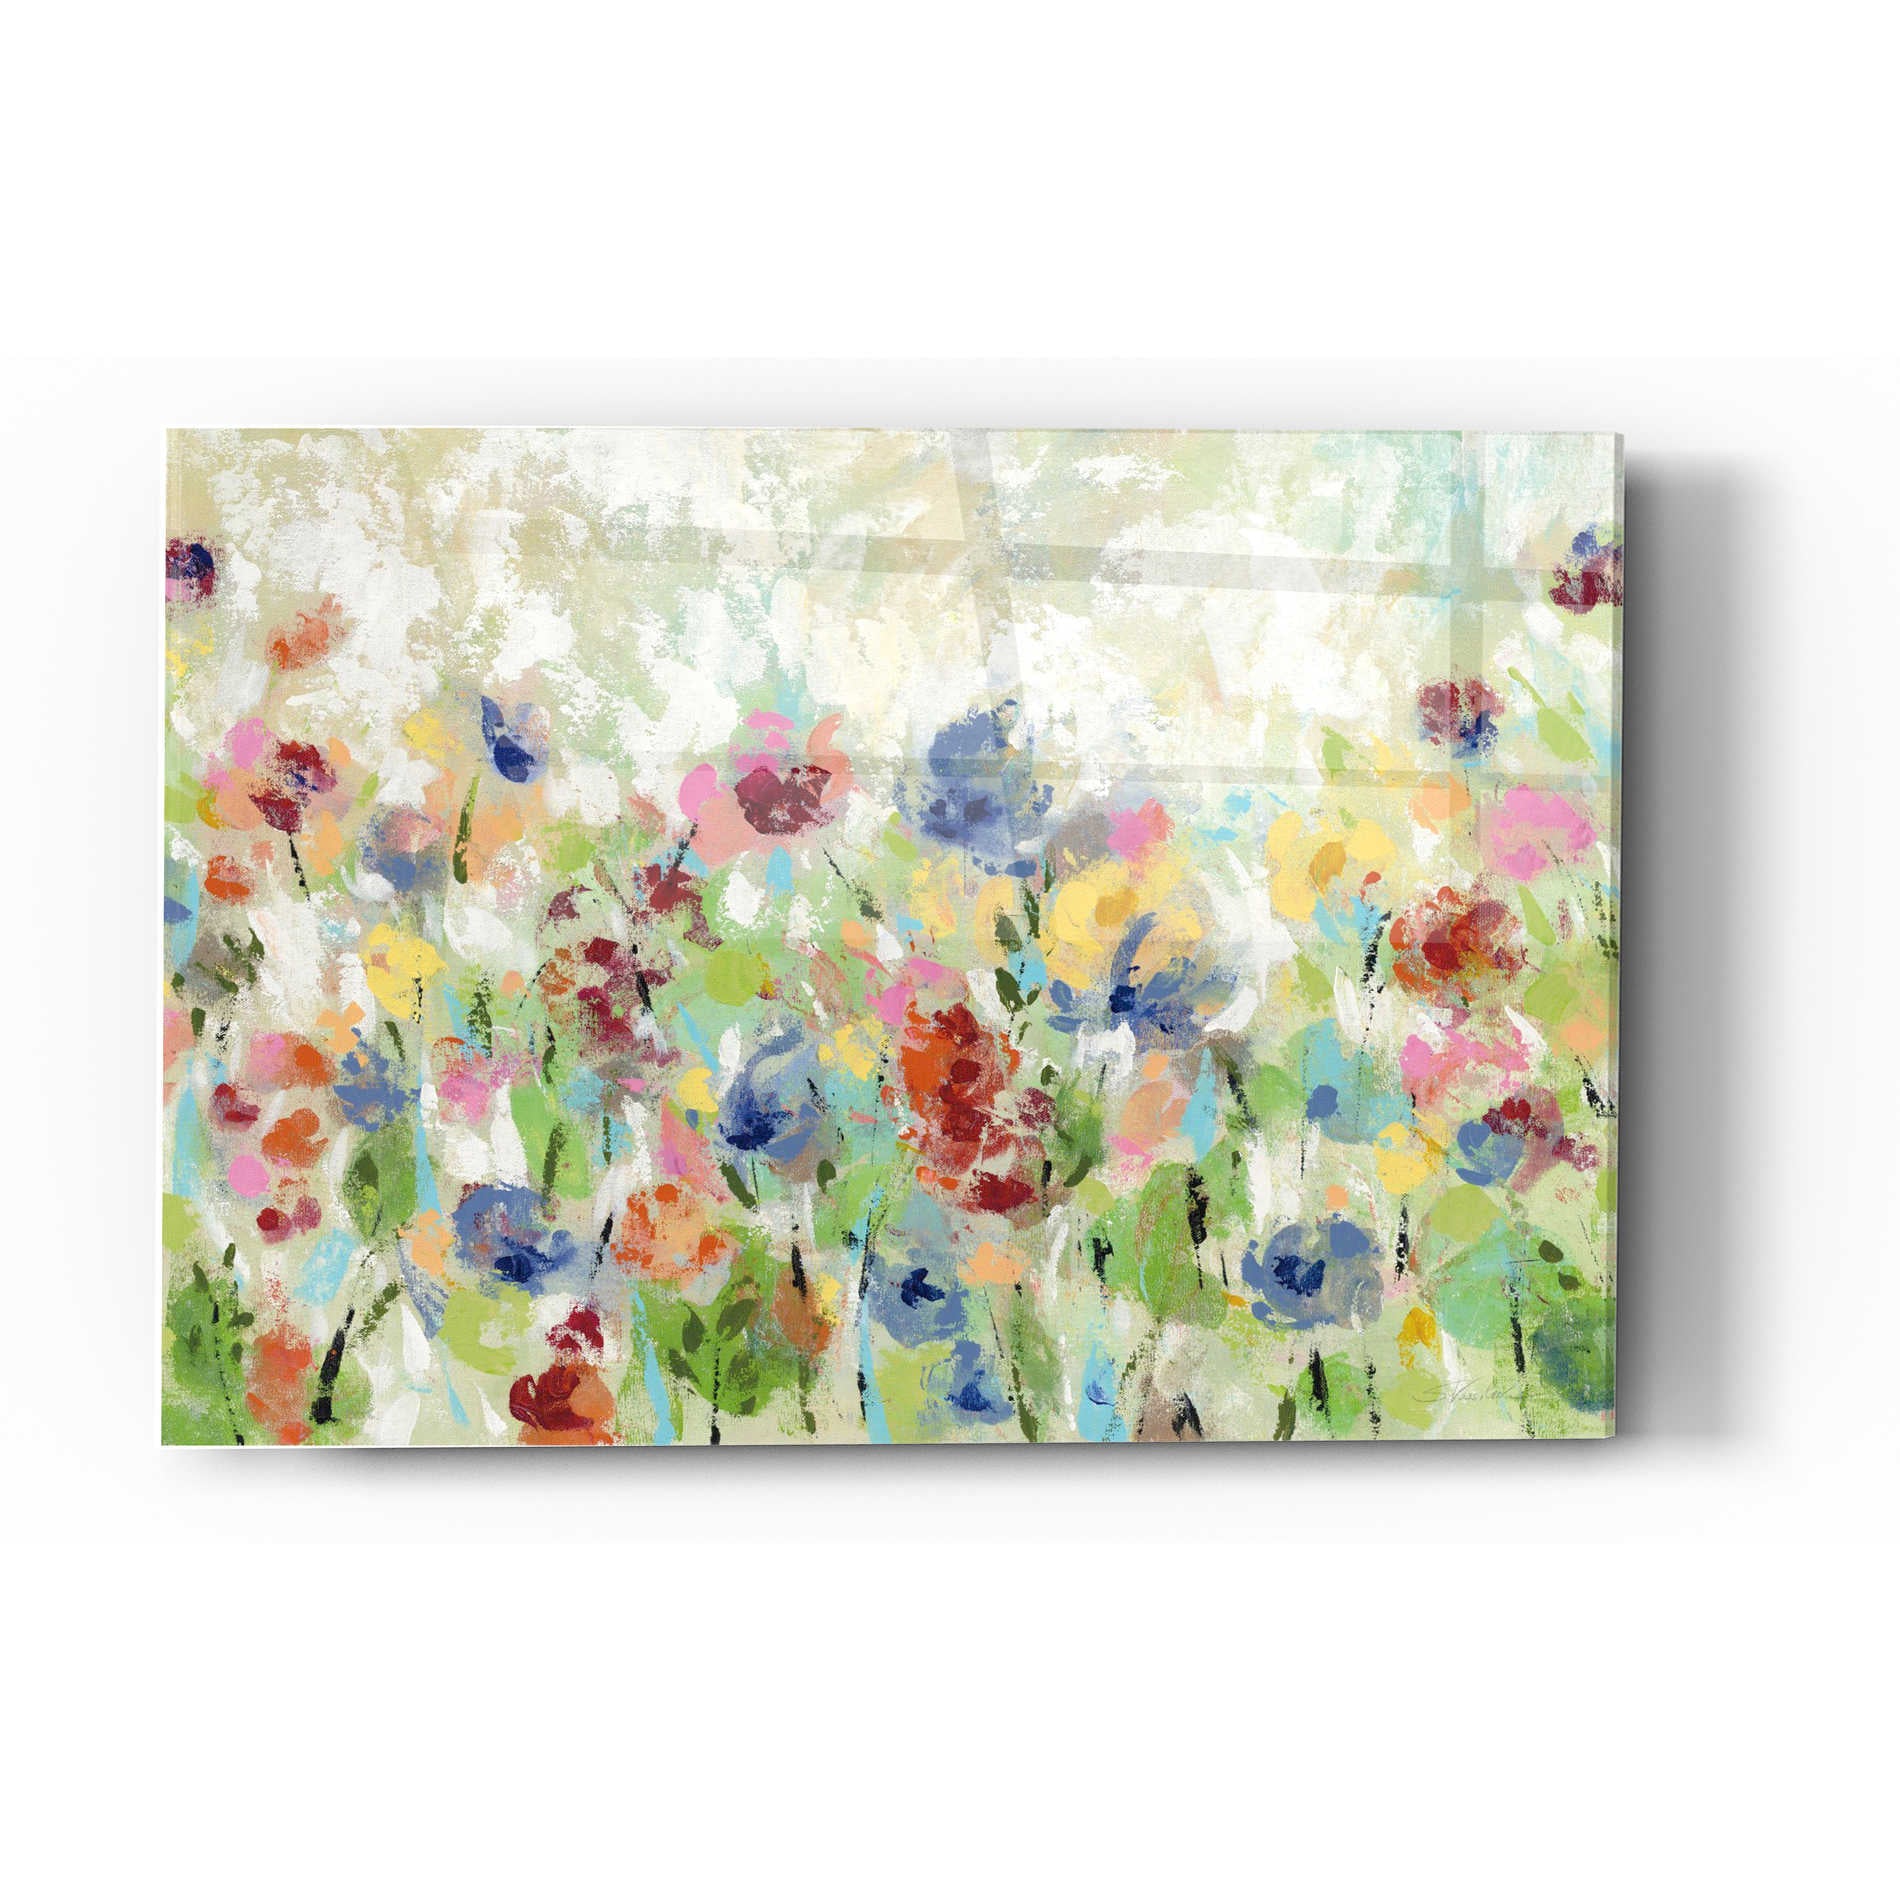 Epic Art 'Springtime Meadow Flowers' by Silvia Vassileva, Acrylic Glass Wall Art,12x16